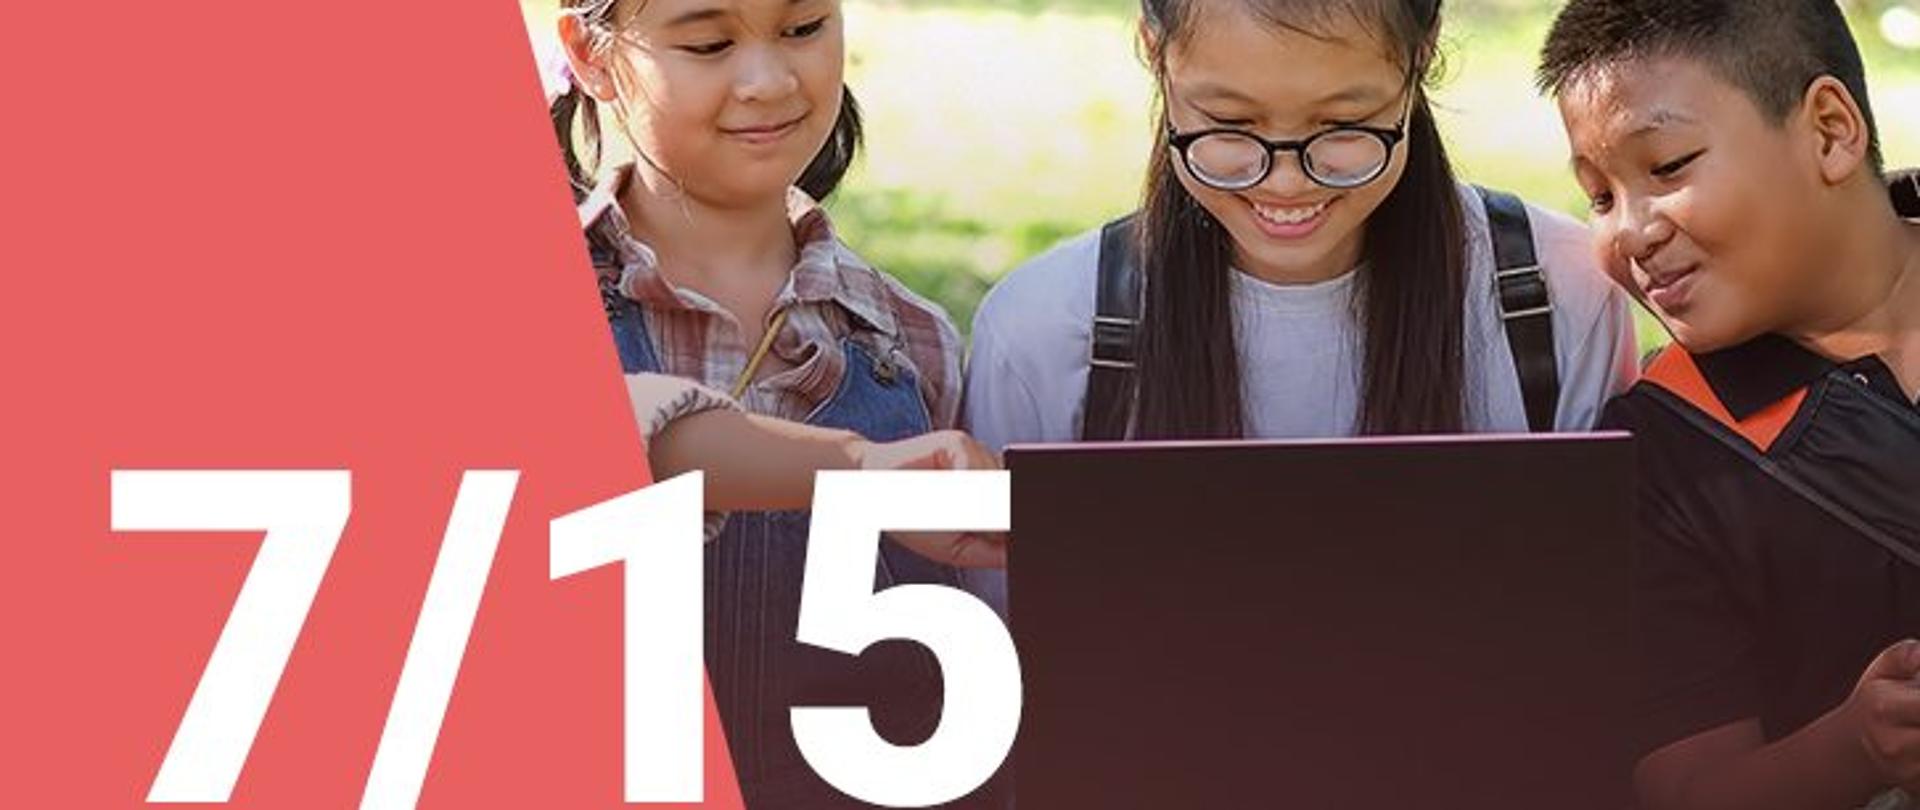 Na zdjęciu widzimy dwie dziewczynki oraz chłopca patrzących z uśmiechem na ekran laptopa. W dolnym lewym roku widoczna jest numeracja zdjęcia (7/15) 